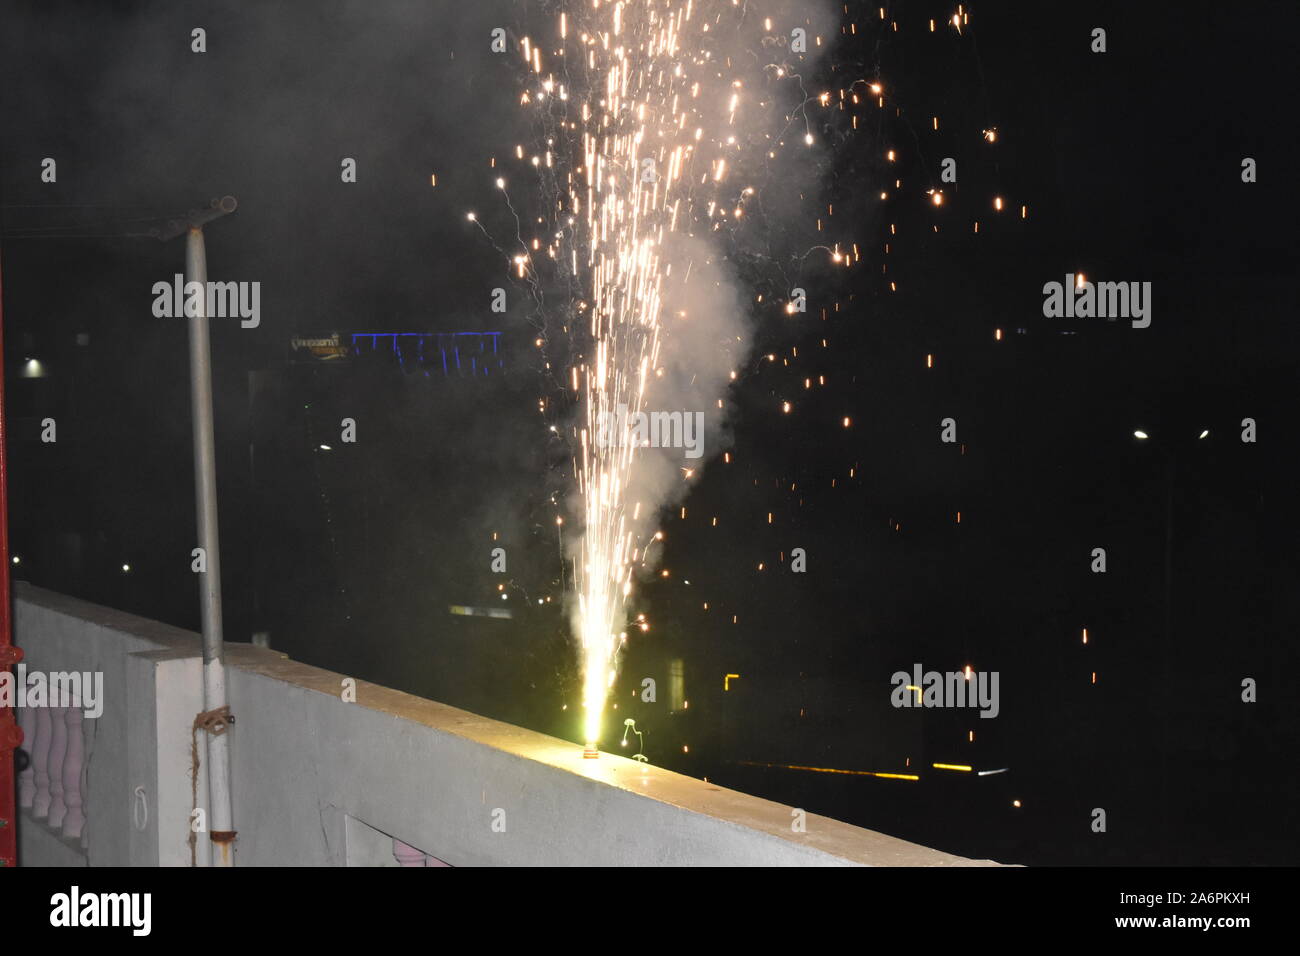 Bac à fleur d'artifice Diwali Diwali festival feu d'étincelles d'arbres est célébré en Inde plus populaire fête hindoue célébrée avec le feu fonctionne. Banque D'Images